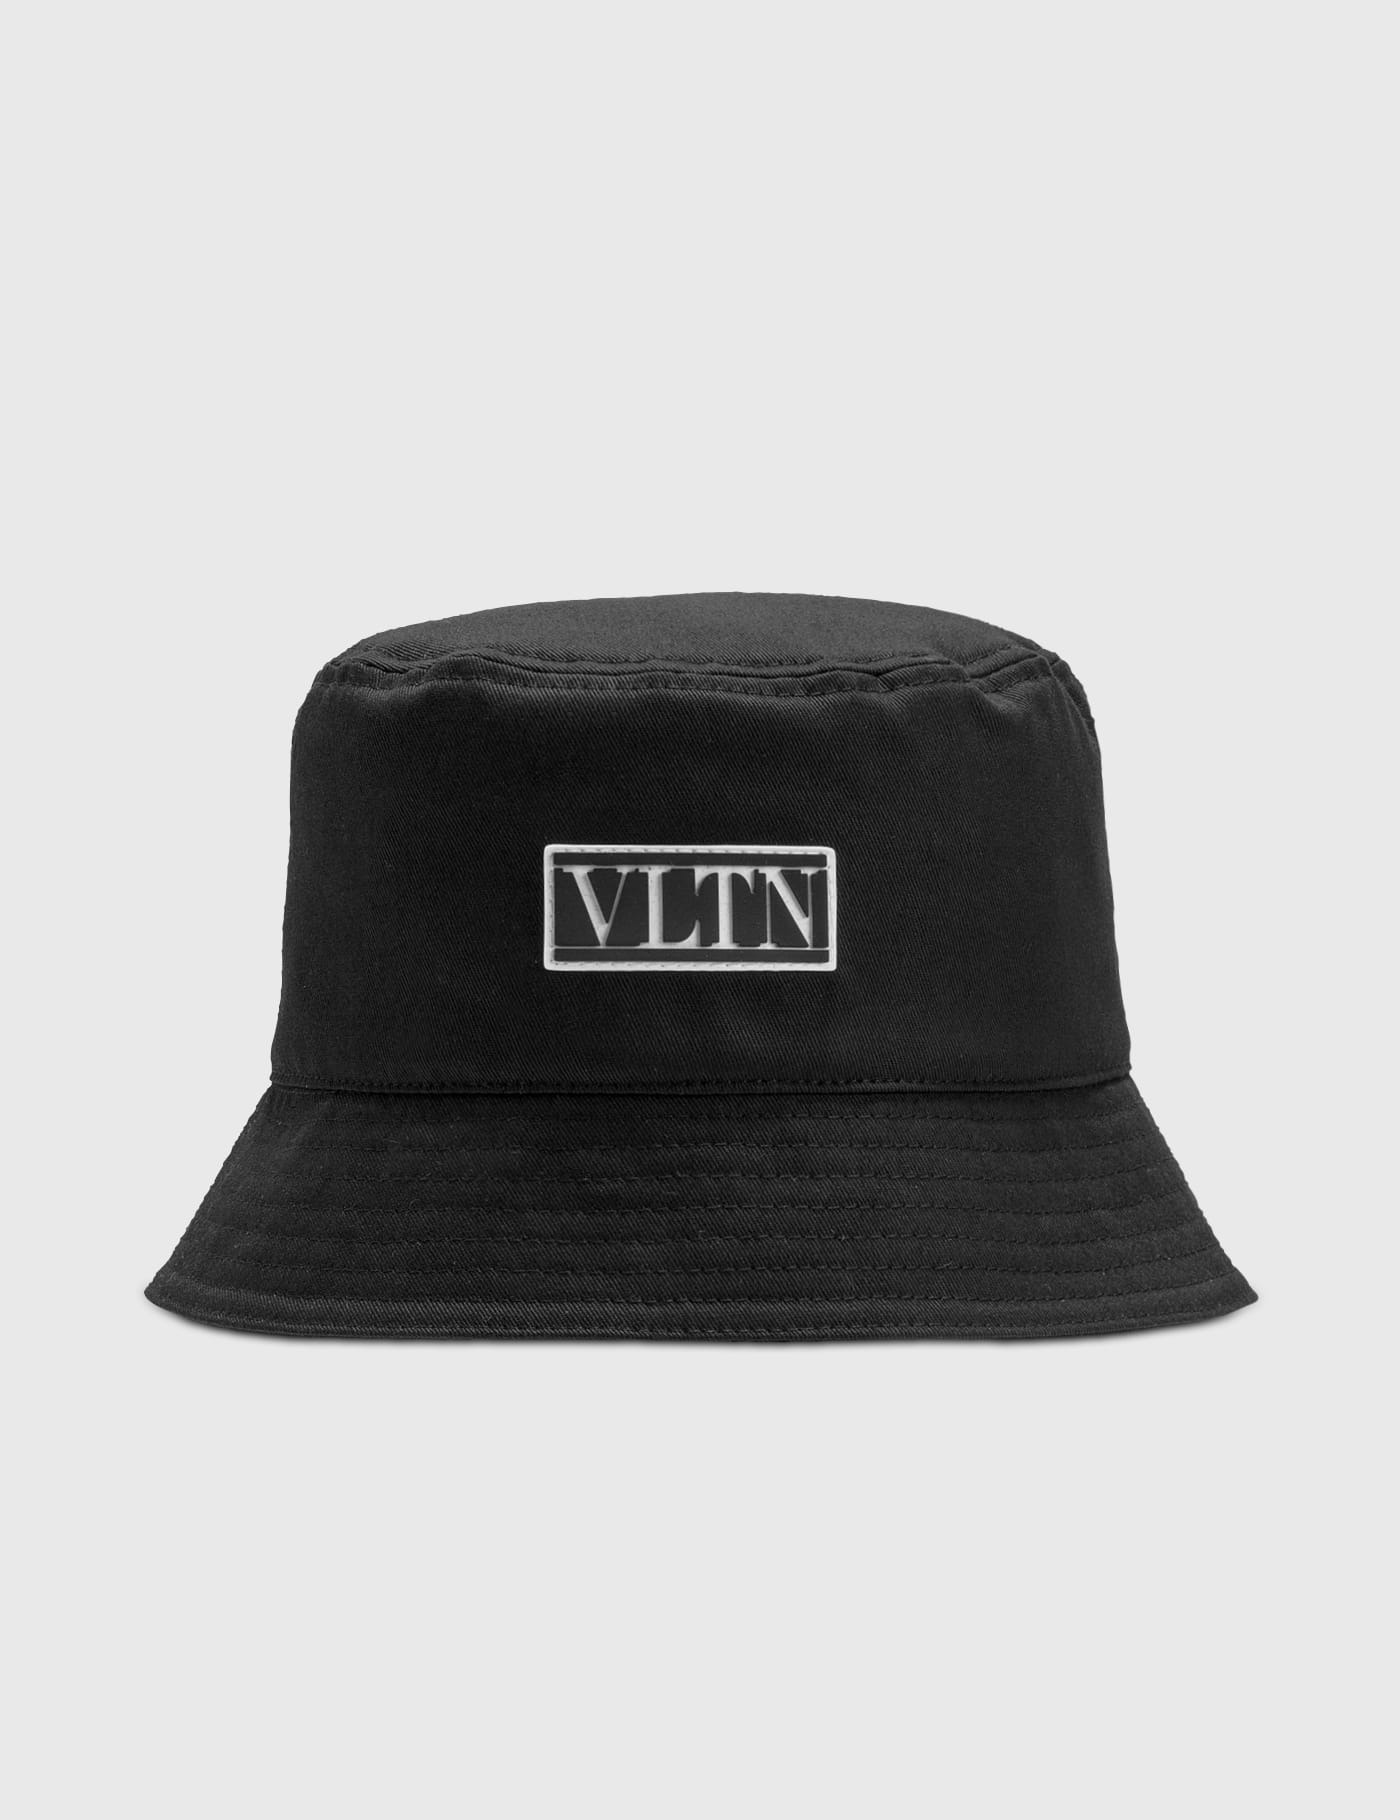 Valentino - Valentino Garavani VLTN Cotton Bucket Hat | HBX